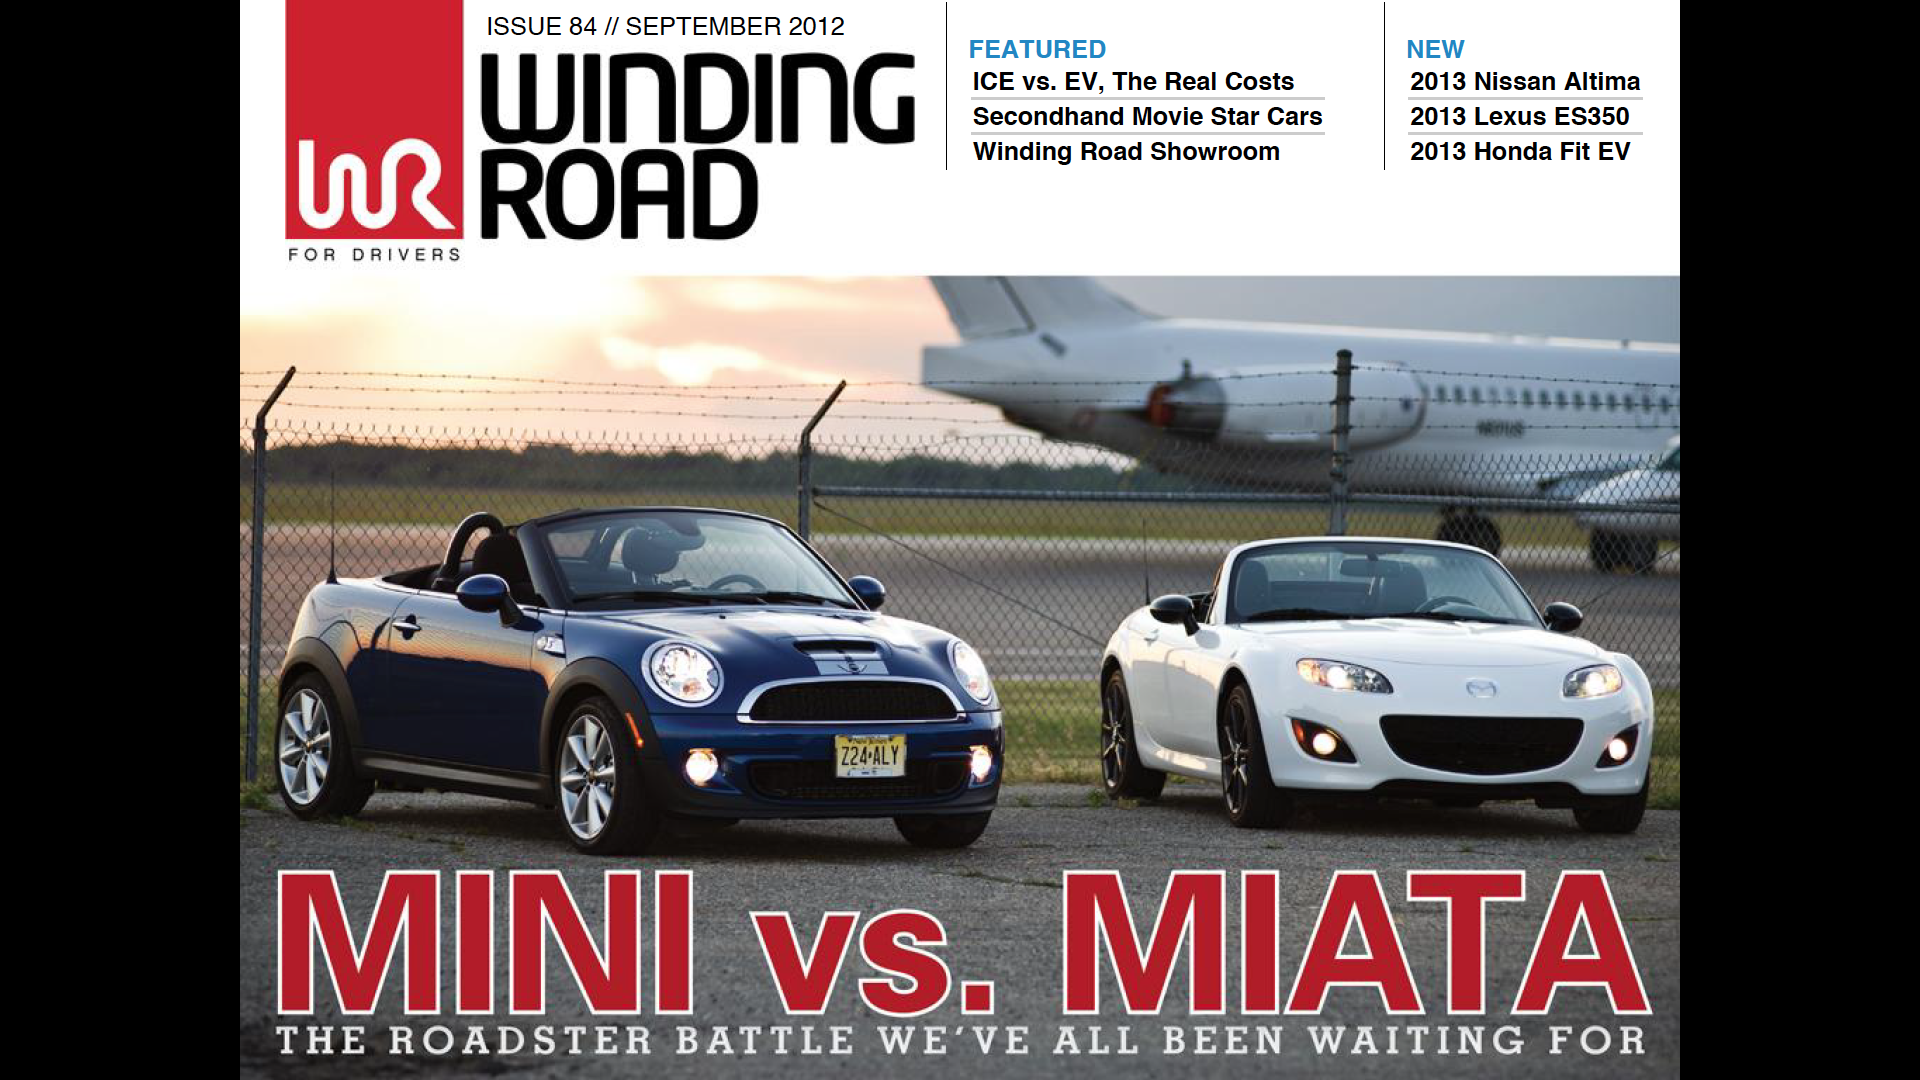 Mini Vs. Miata Issue 84 // September 2012